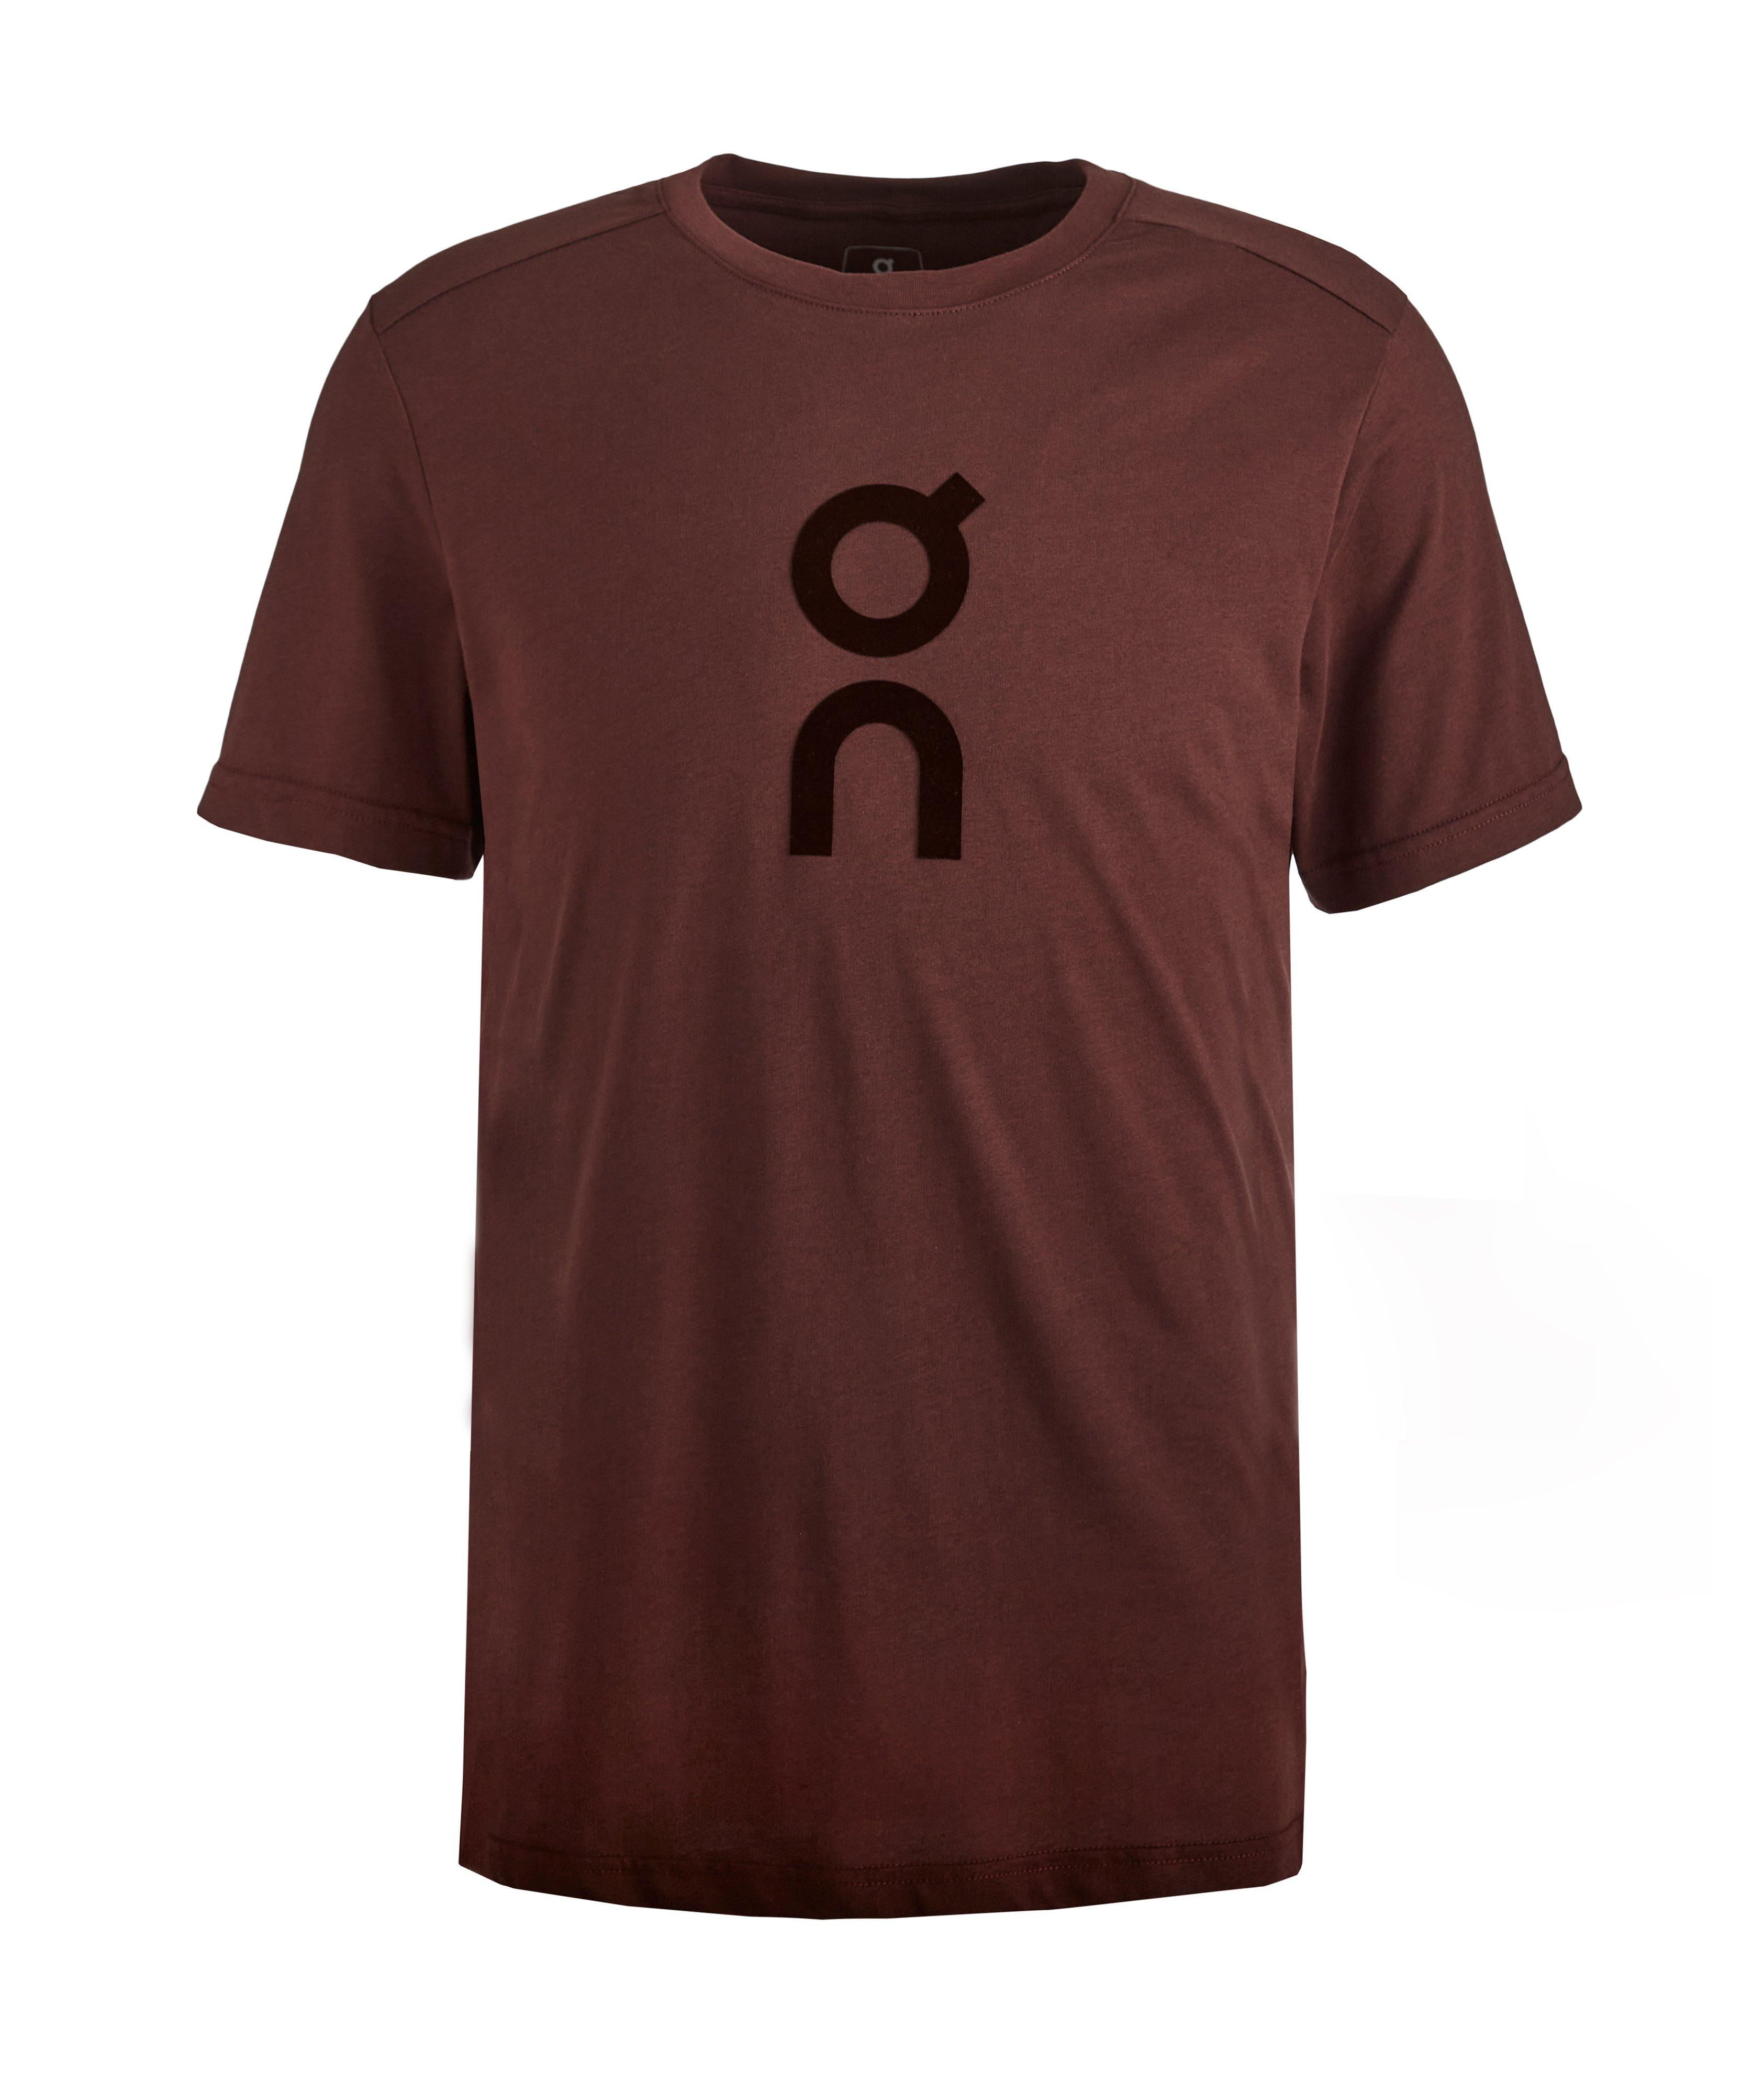 T-shirt en coton performance avec logo image 0